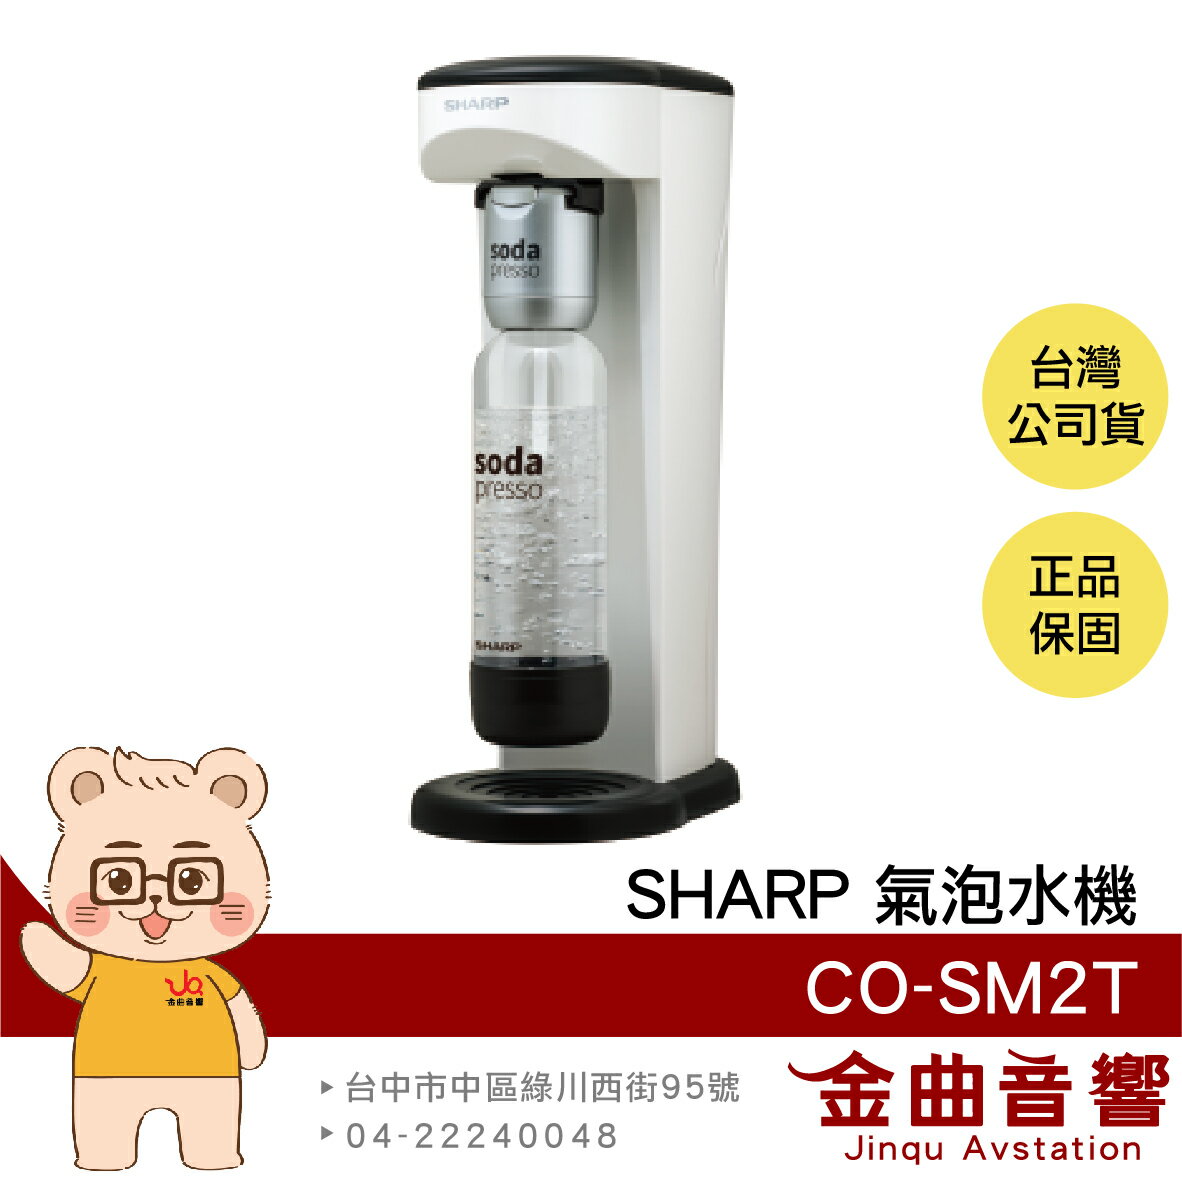 SHARP 夏普 CO-SM2T 洋蔥白 防爆裝置 輕鬆拆卸 耐壓水瓶 soda presso 氣泡水機 | 金曲音響